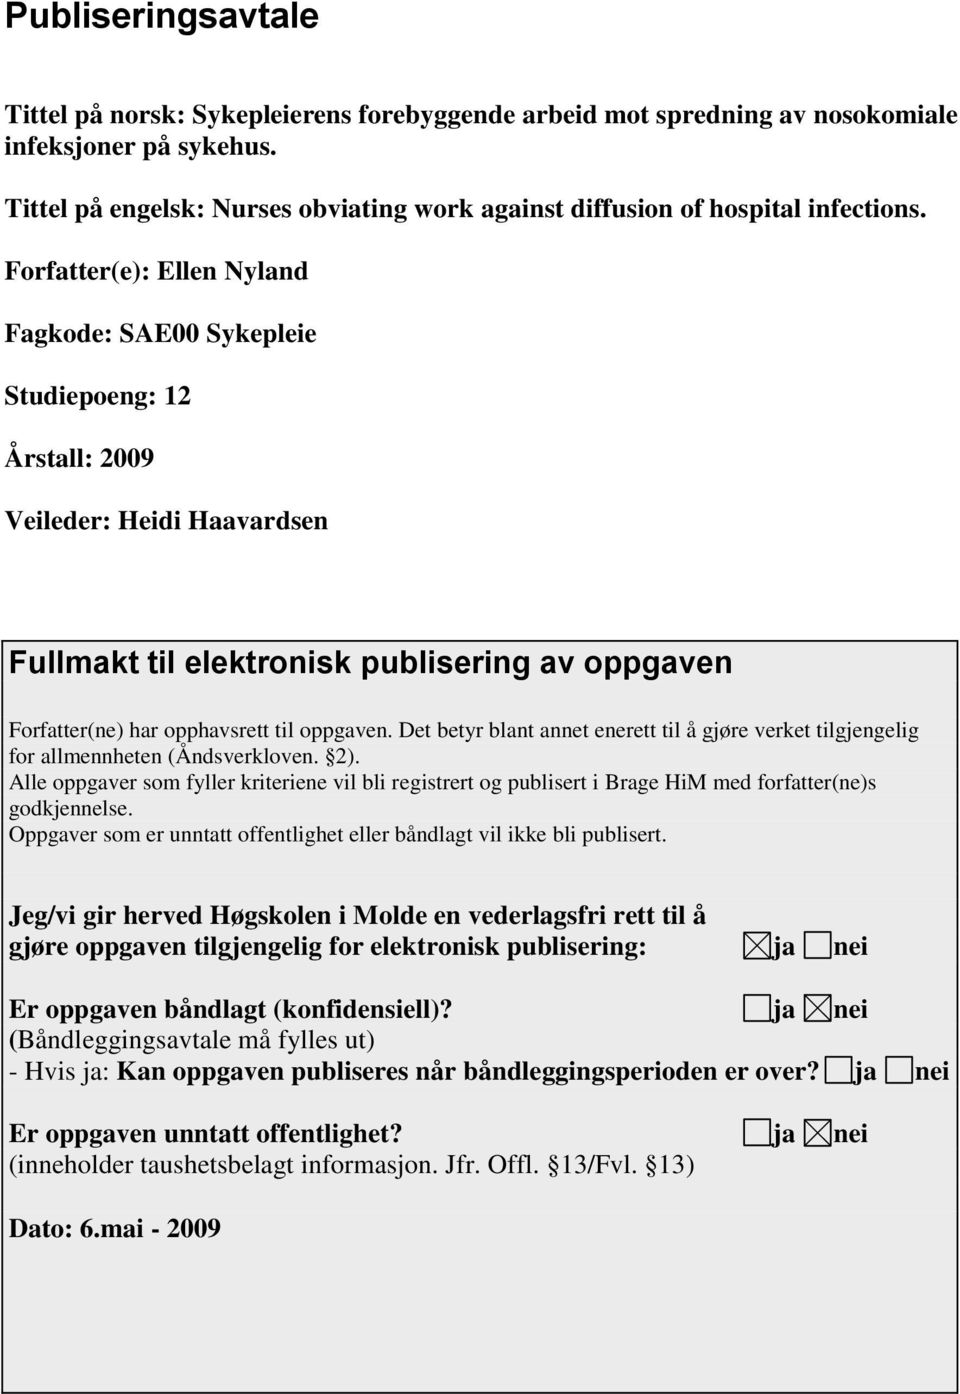 Forfatter(e): Ellen Nyland Fagkode: SAE00 Sykepleie Studiepoeng: 12 Årstall: 2009 Veileder: Heidi Haavardsen Fullmakt til elektronisk publisering av oppgaven Forfatter(ne) har opphavsrett til